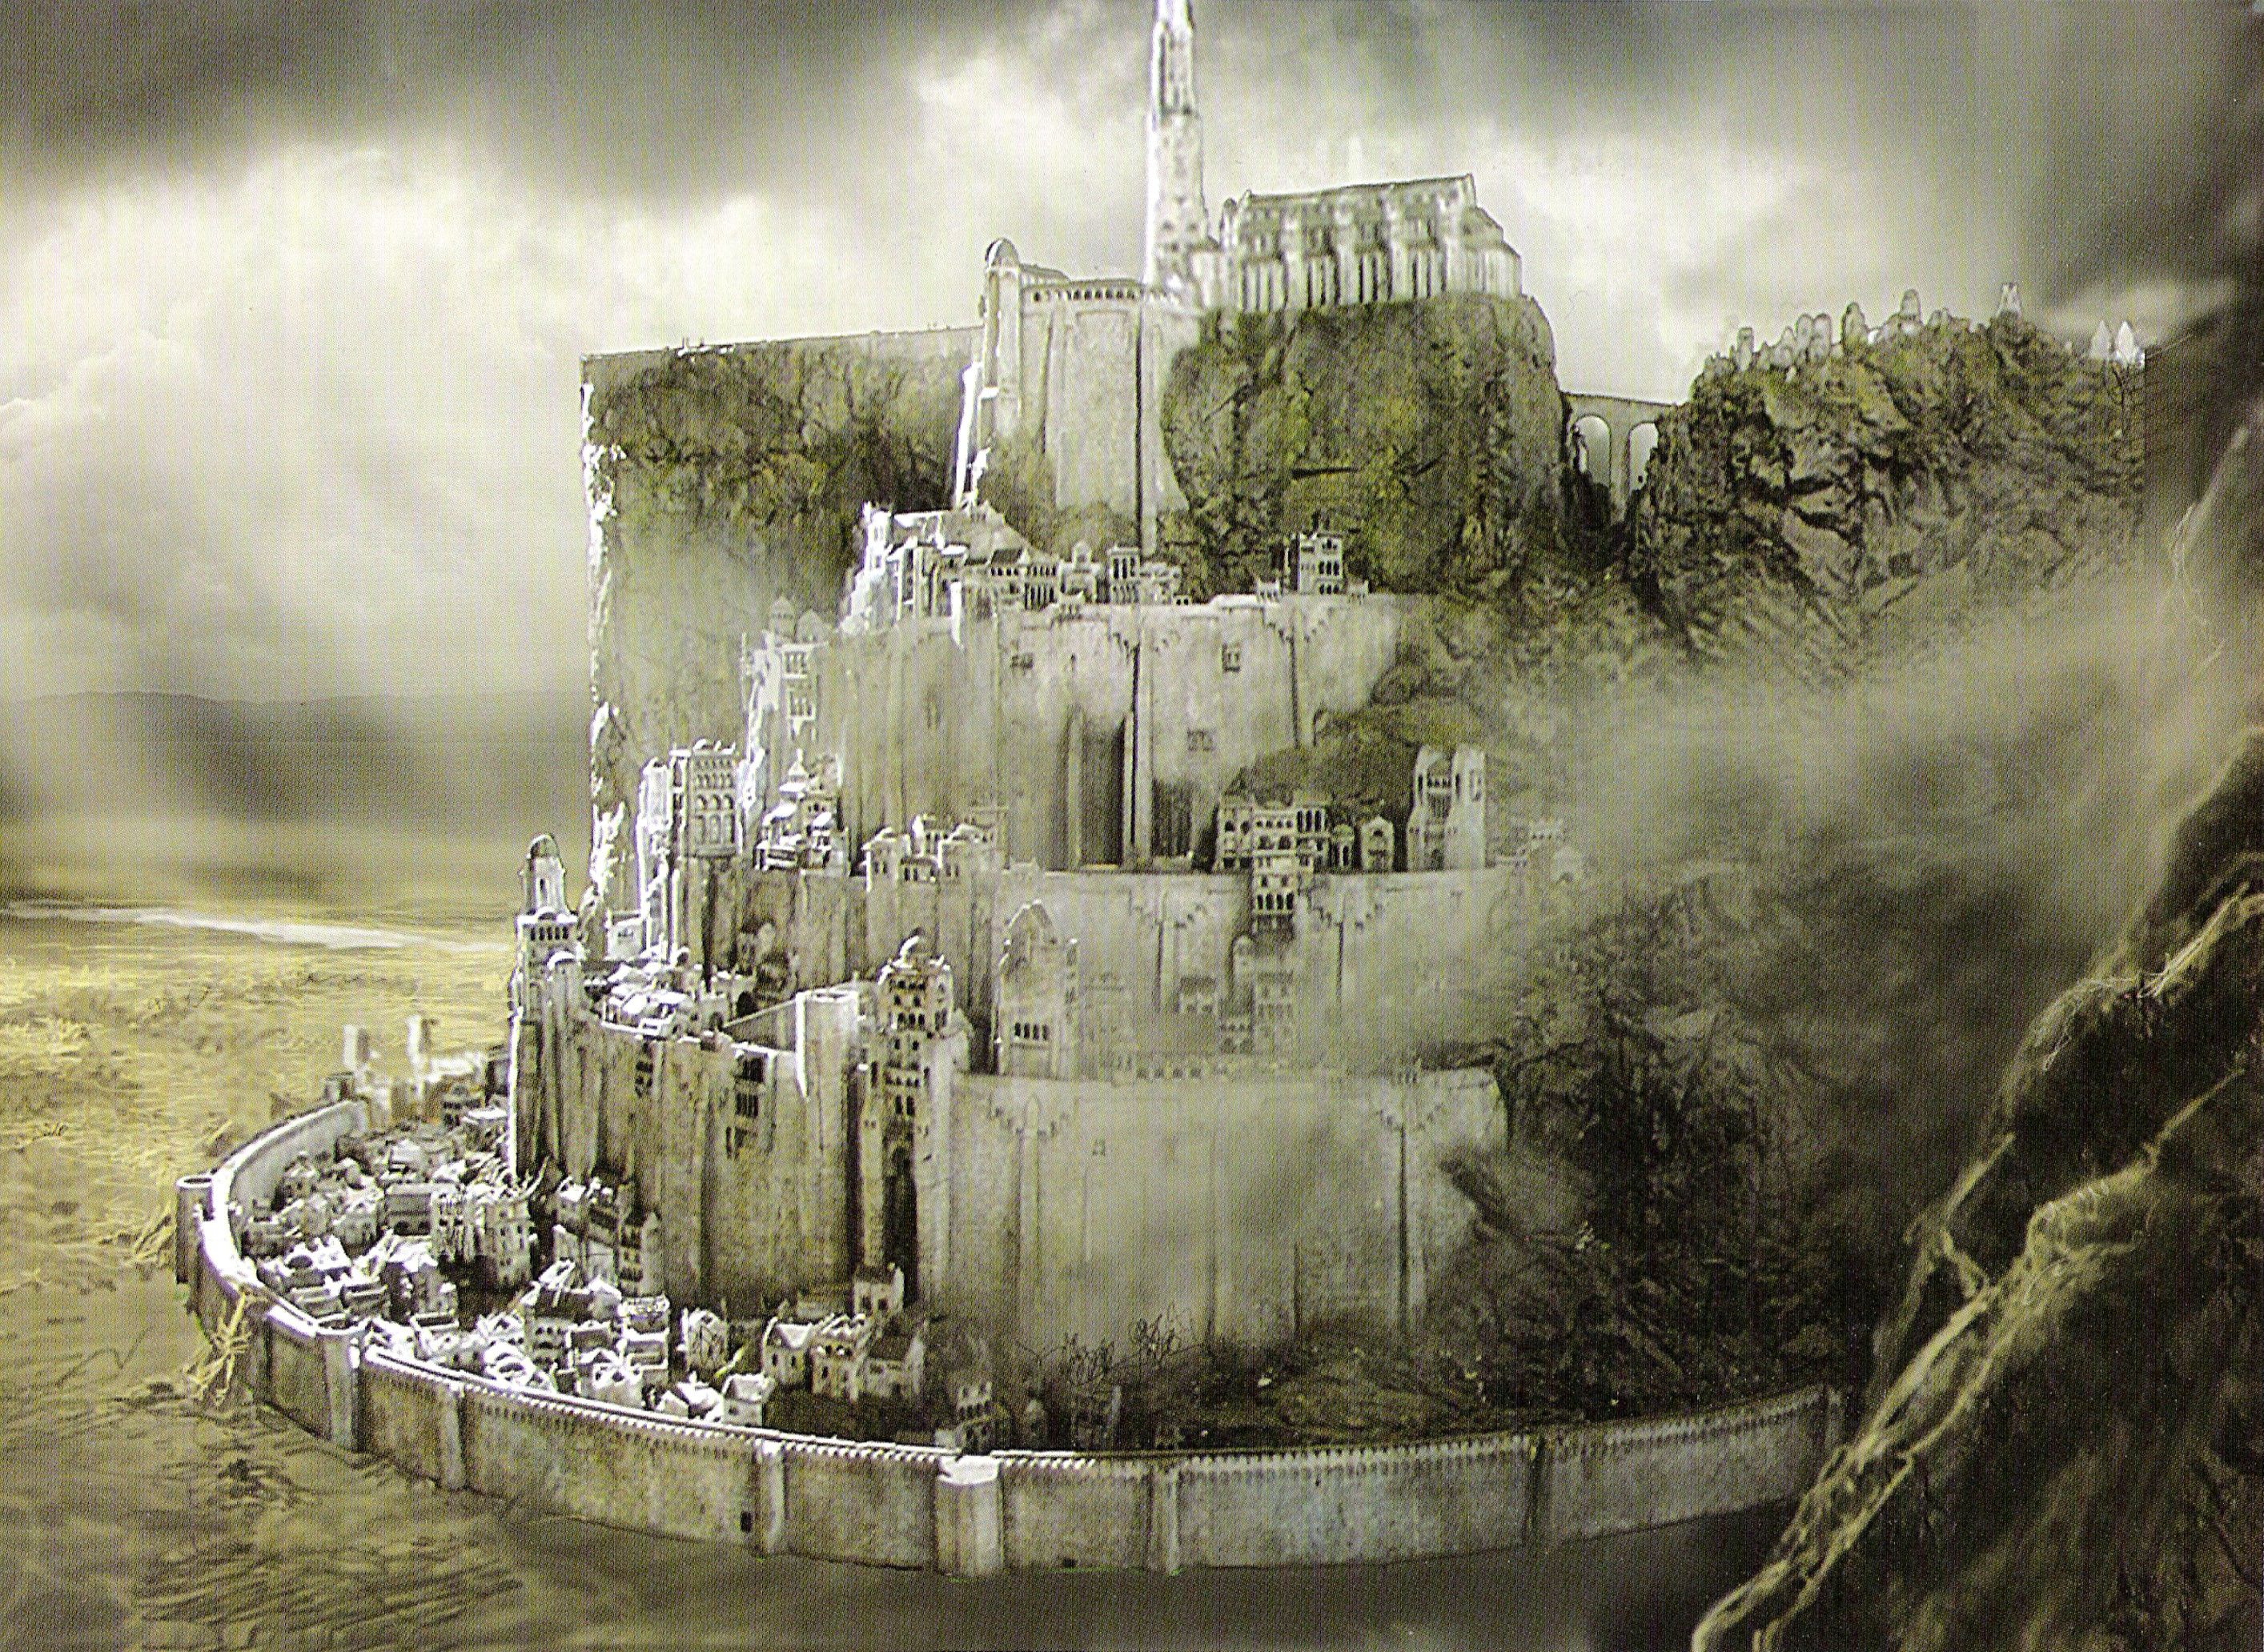 Free download Minas Tirith Wallpaper 631x1013 Minas Tirith The